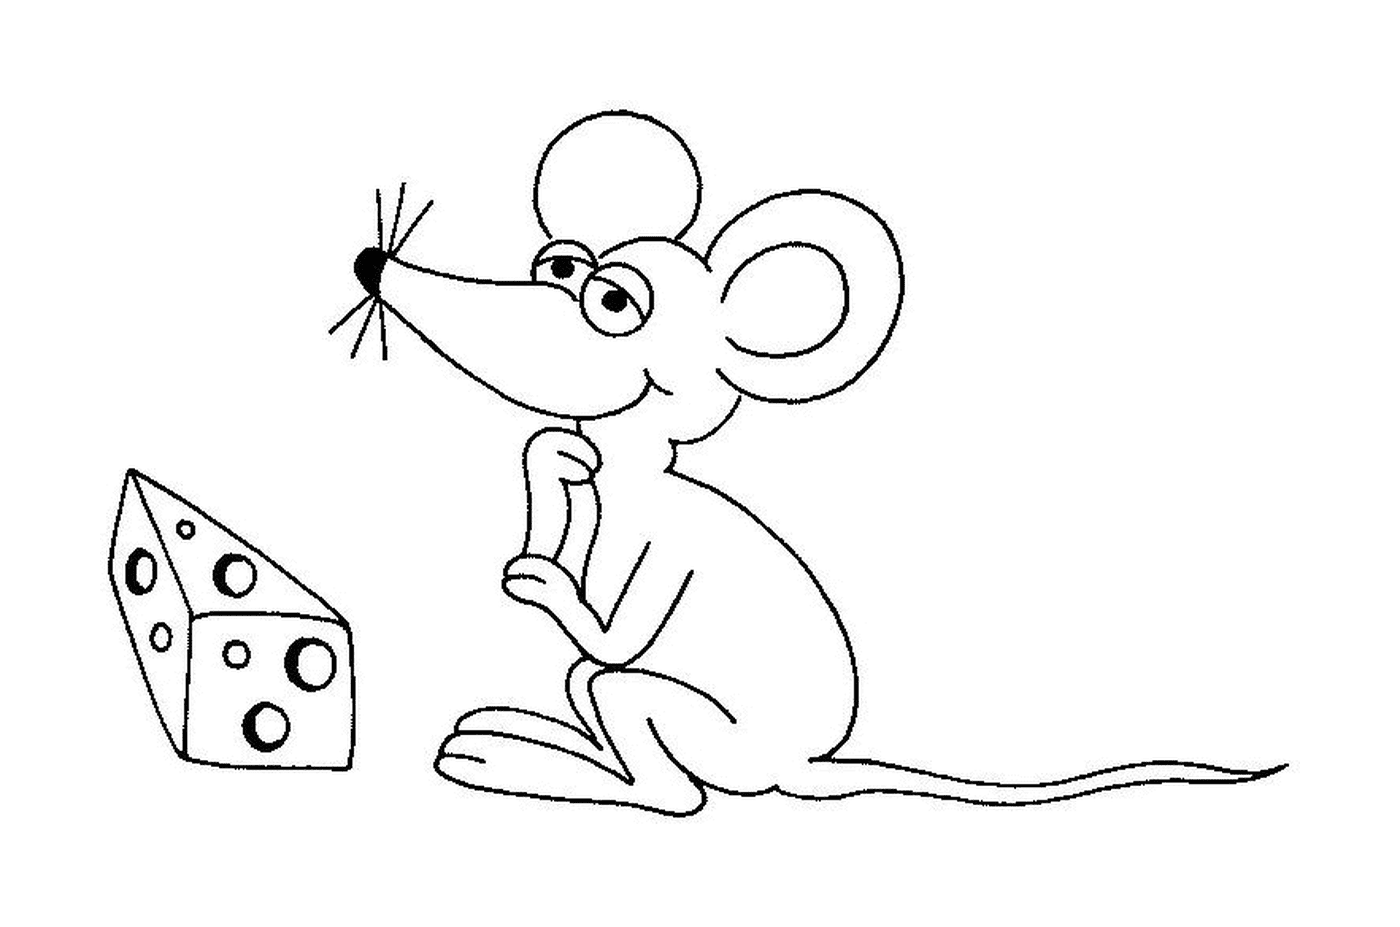   Une souris devant du fromage 